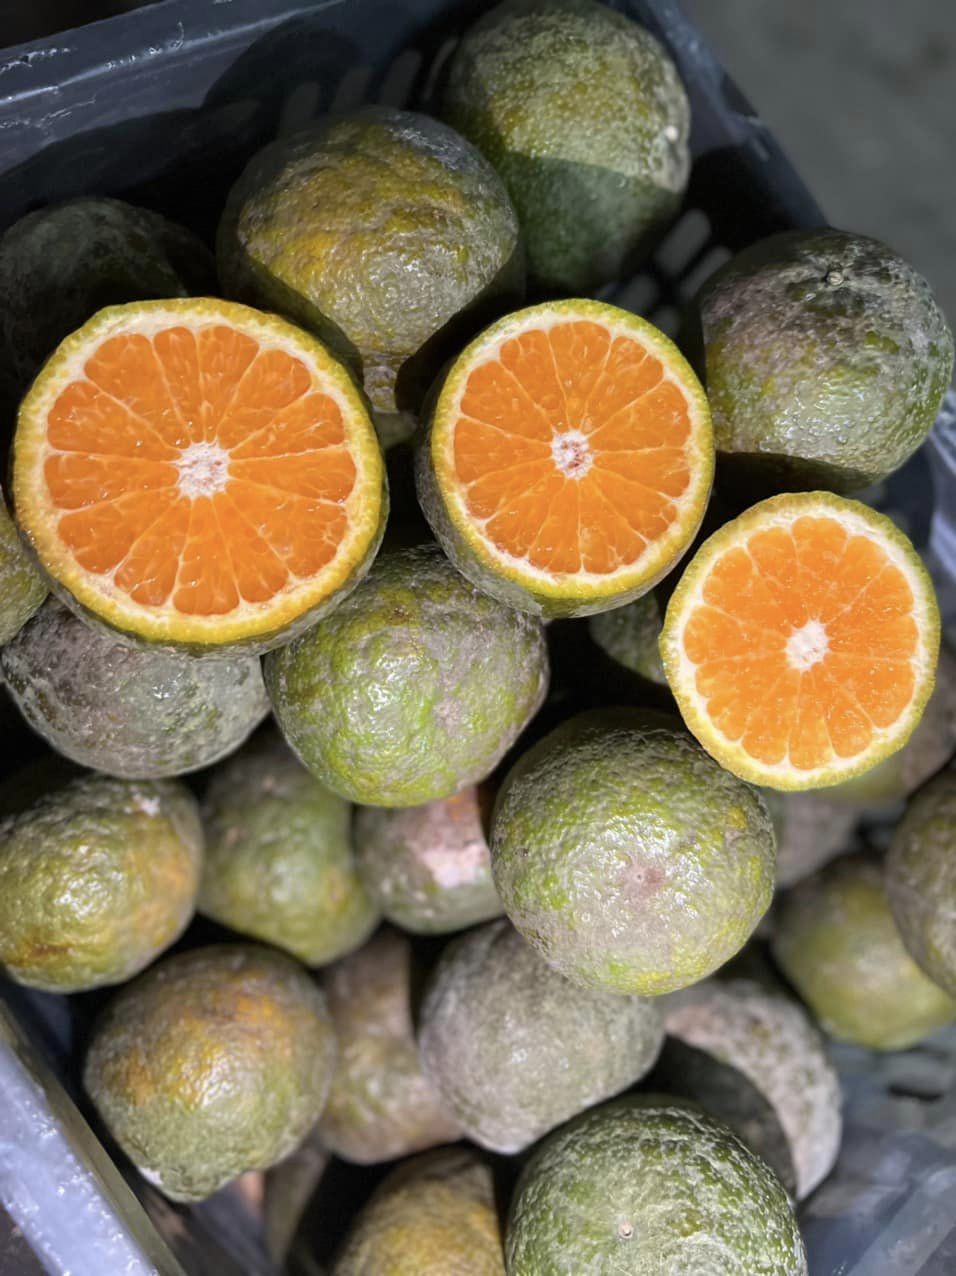 Nước cam Trái cây cam - hình ảnh naranja png png tải về - Miễn phí trong  suốt Chanh png Tải về.